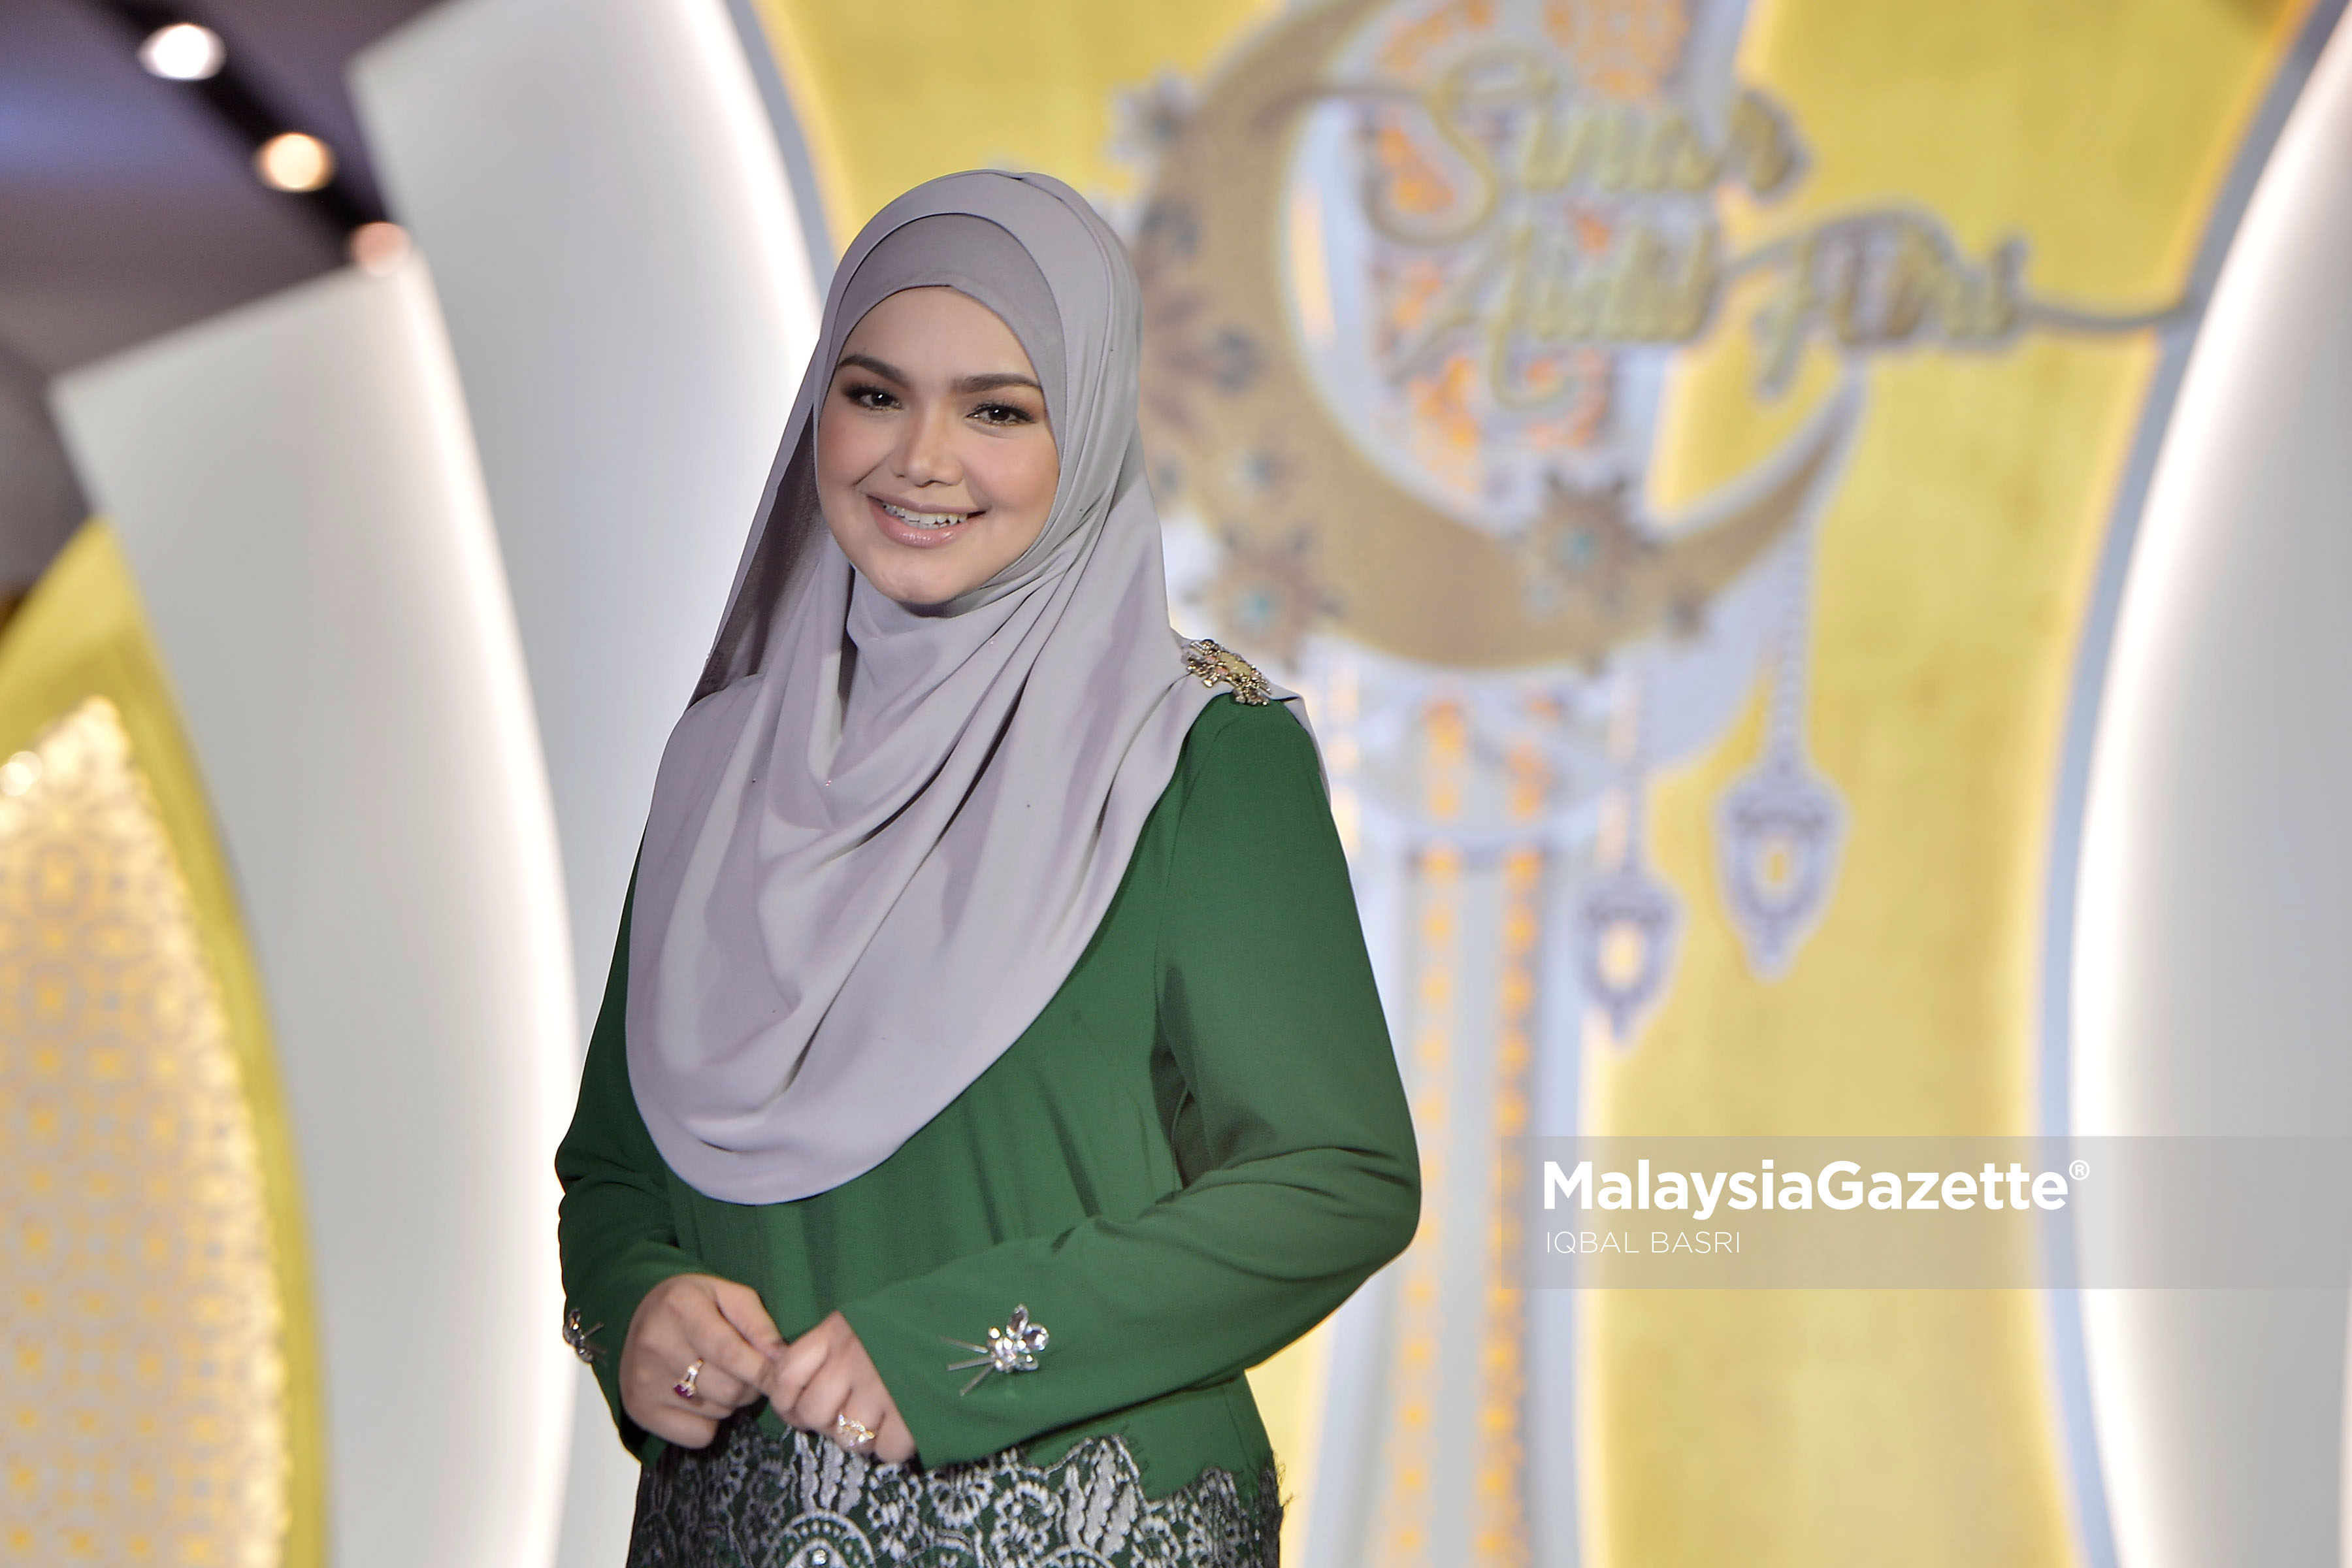 Sesi fotografi bersama Datuk Siti Nurhaliza pada Majlis Perkenalan Creacion and SimplySiti by Siti Nurhaliza di Melawati Mall Ampang, Selangor. foto IQBAL BASRI, 13 MEI 2018